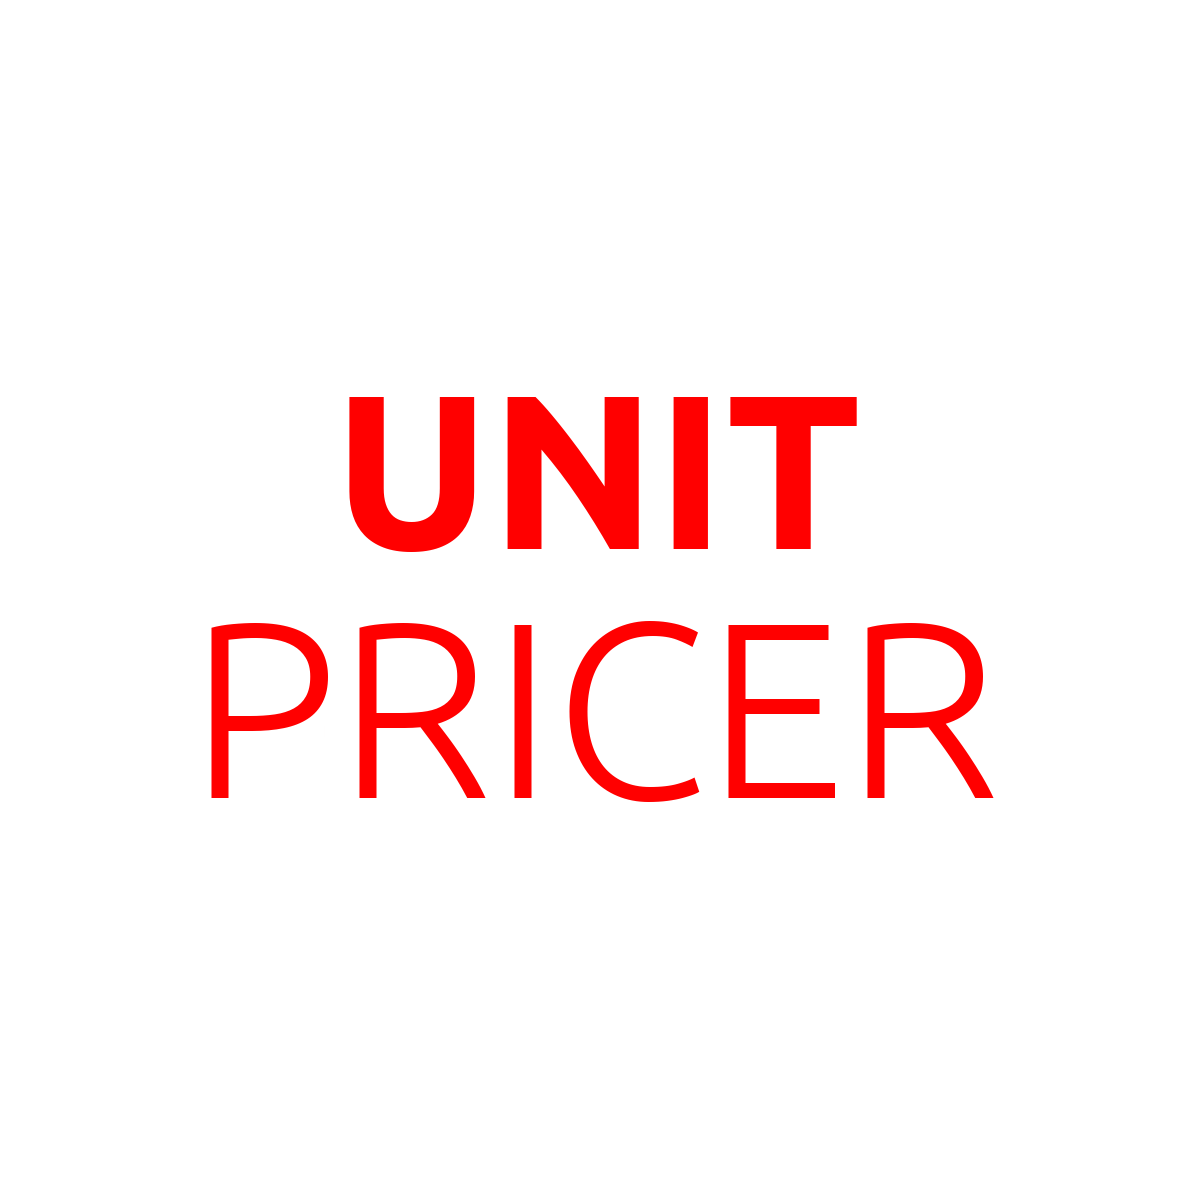 Unit Pricer: Price Per Unit